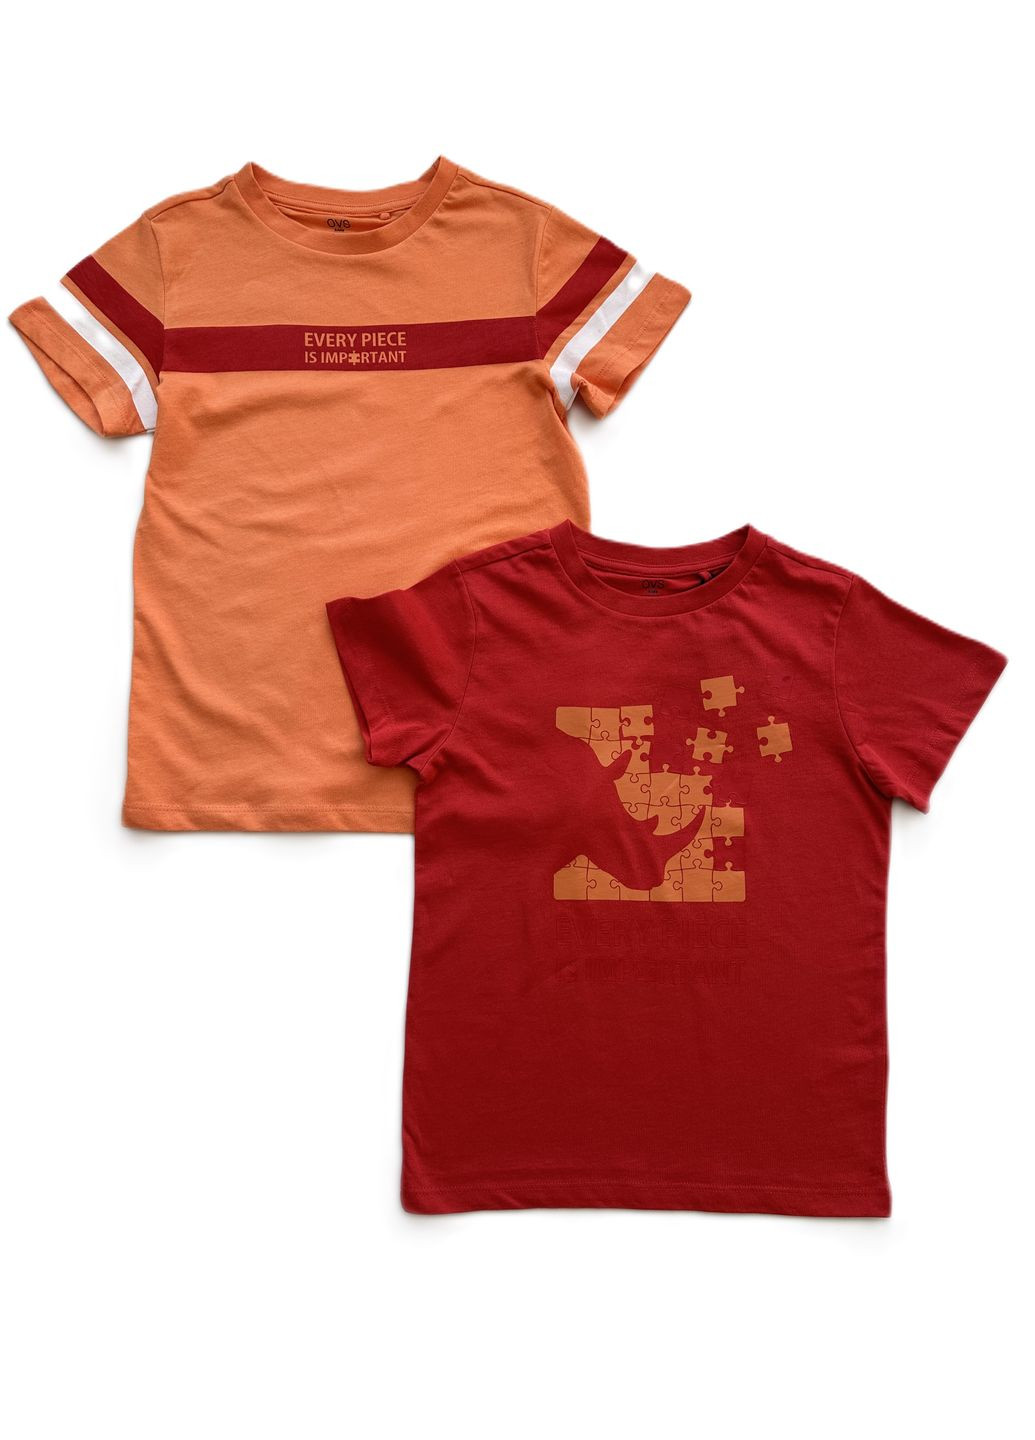 Оранжевая летняя комплект (2шт) футболки для парня оранжевая + красная 2000-23/2000-24 (122 см) OVS